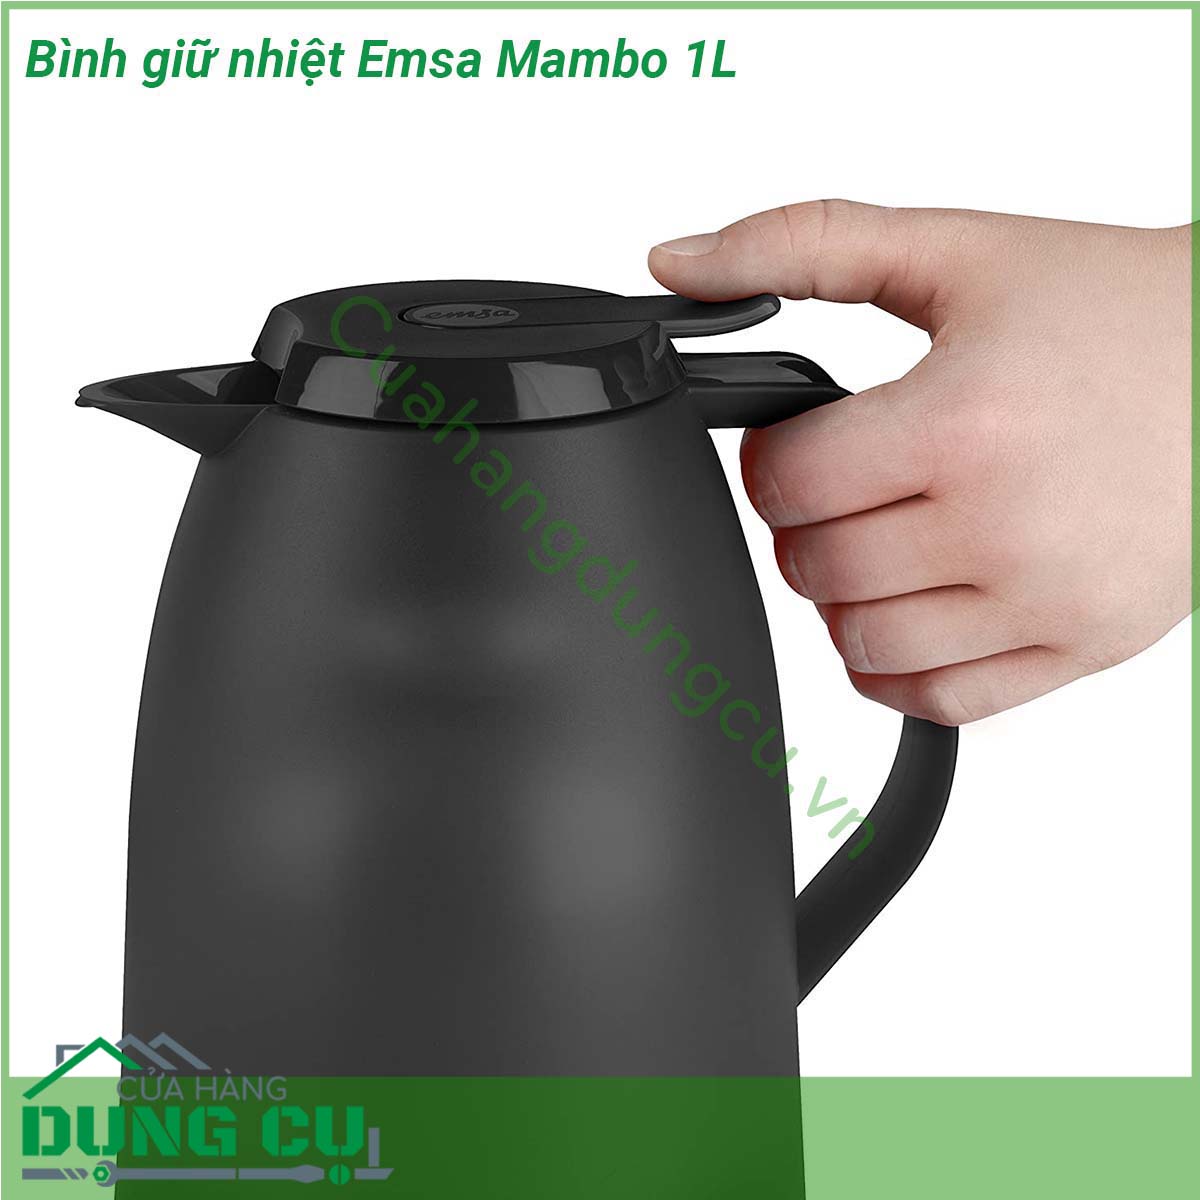 Bình giữ nhiệt Emsa Mambo 1L sở hữu thiết kế vô cùng ấn tượng với vỏ bình làm bằng nhựa bóng cao cấp thiết kế đơn giản trang nhã nhiều màu sắc siêu bền Sẽ là một thiết bị gia dụng không thể thiếu trong mỗi gia đình